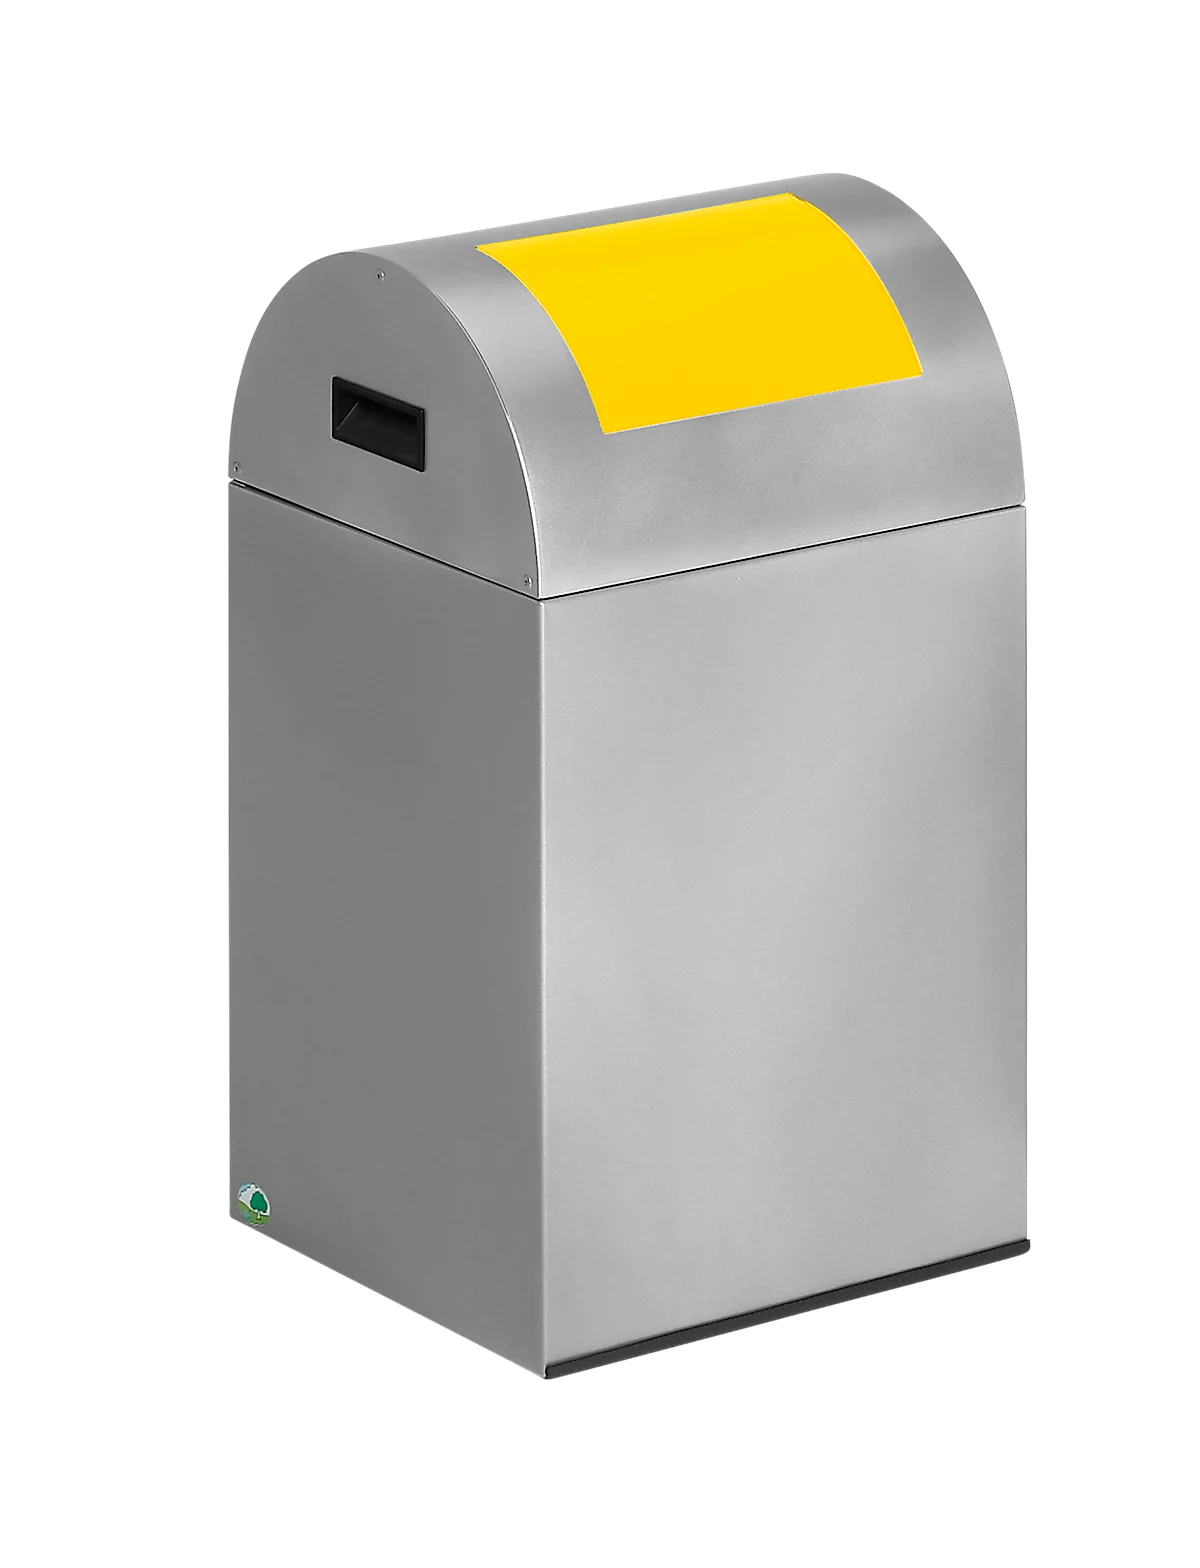 Colector de residuos reciclables autoextinguible 40R, plata/amarillo